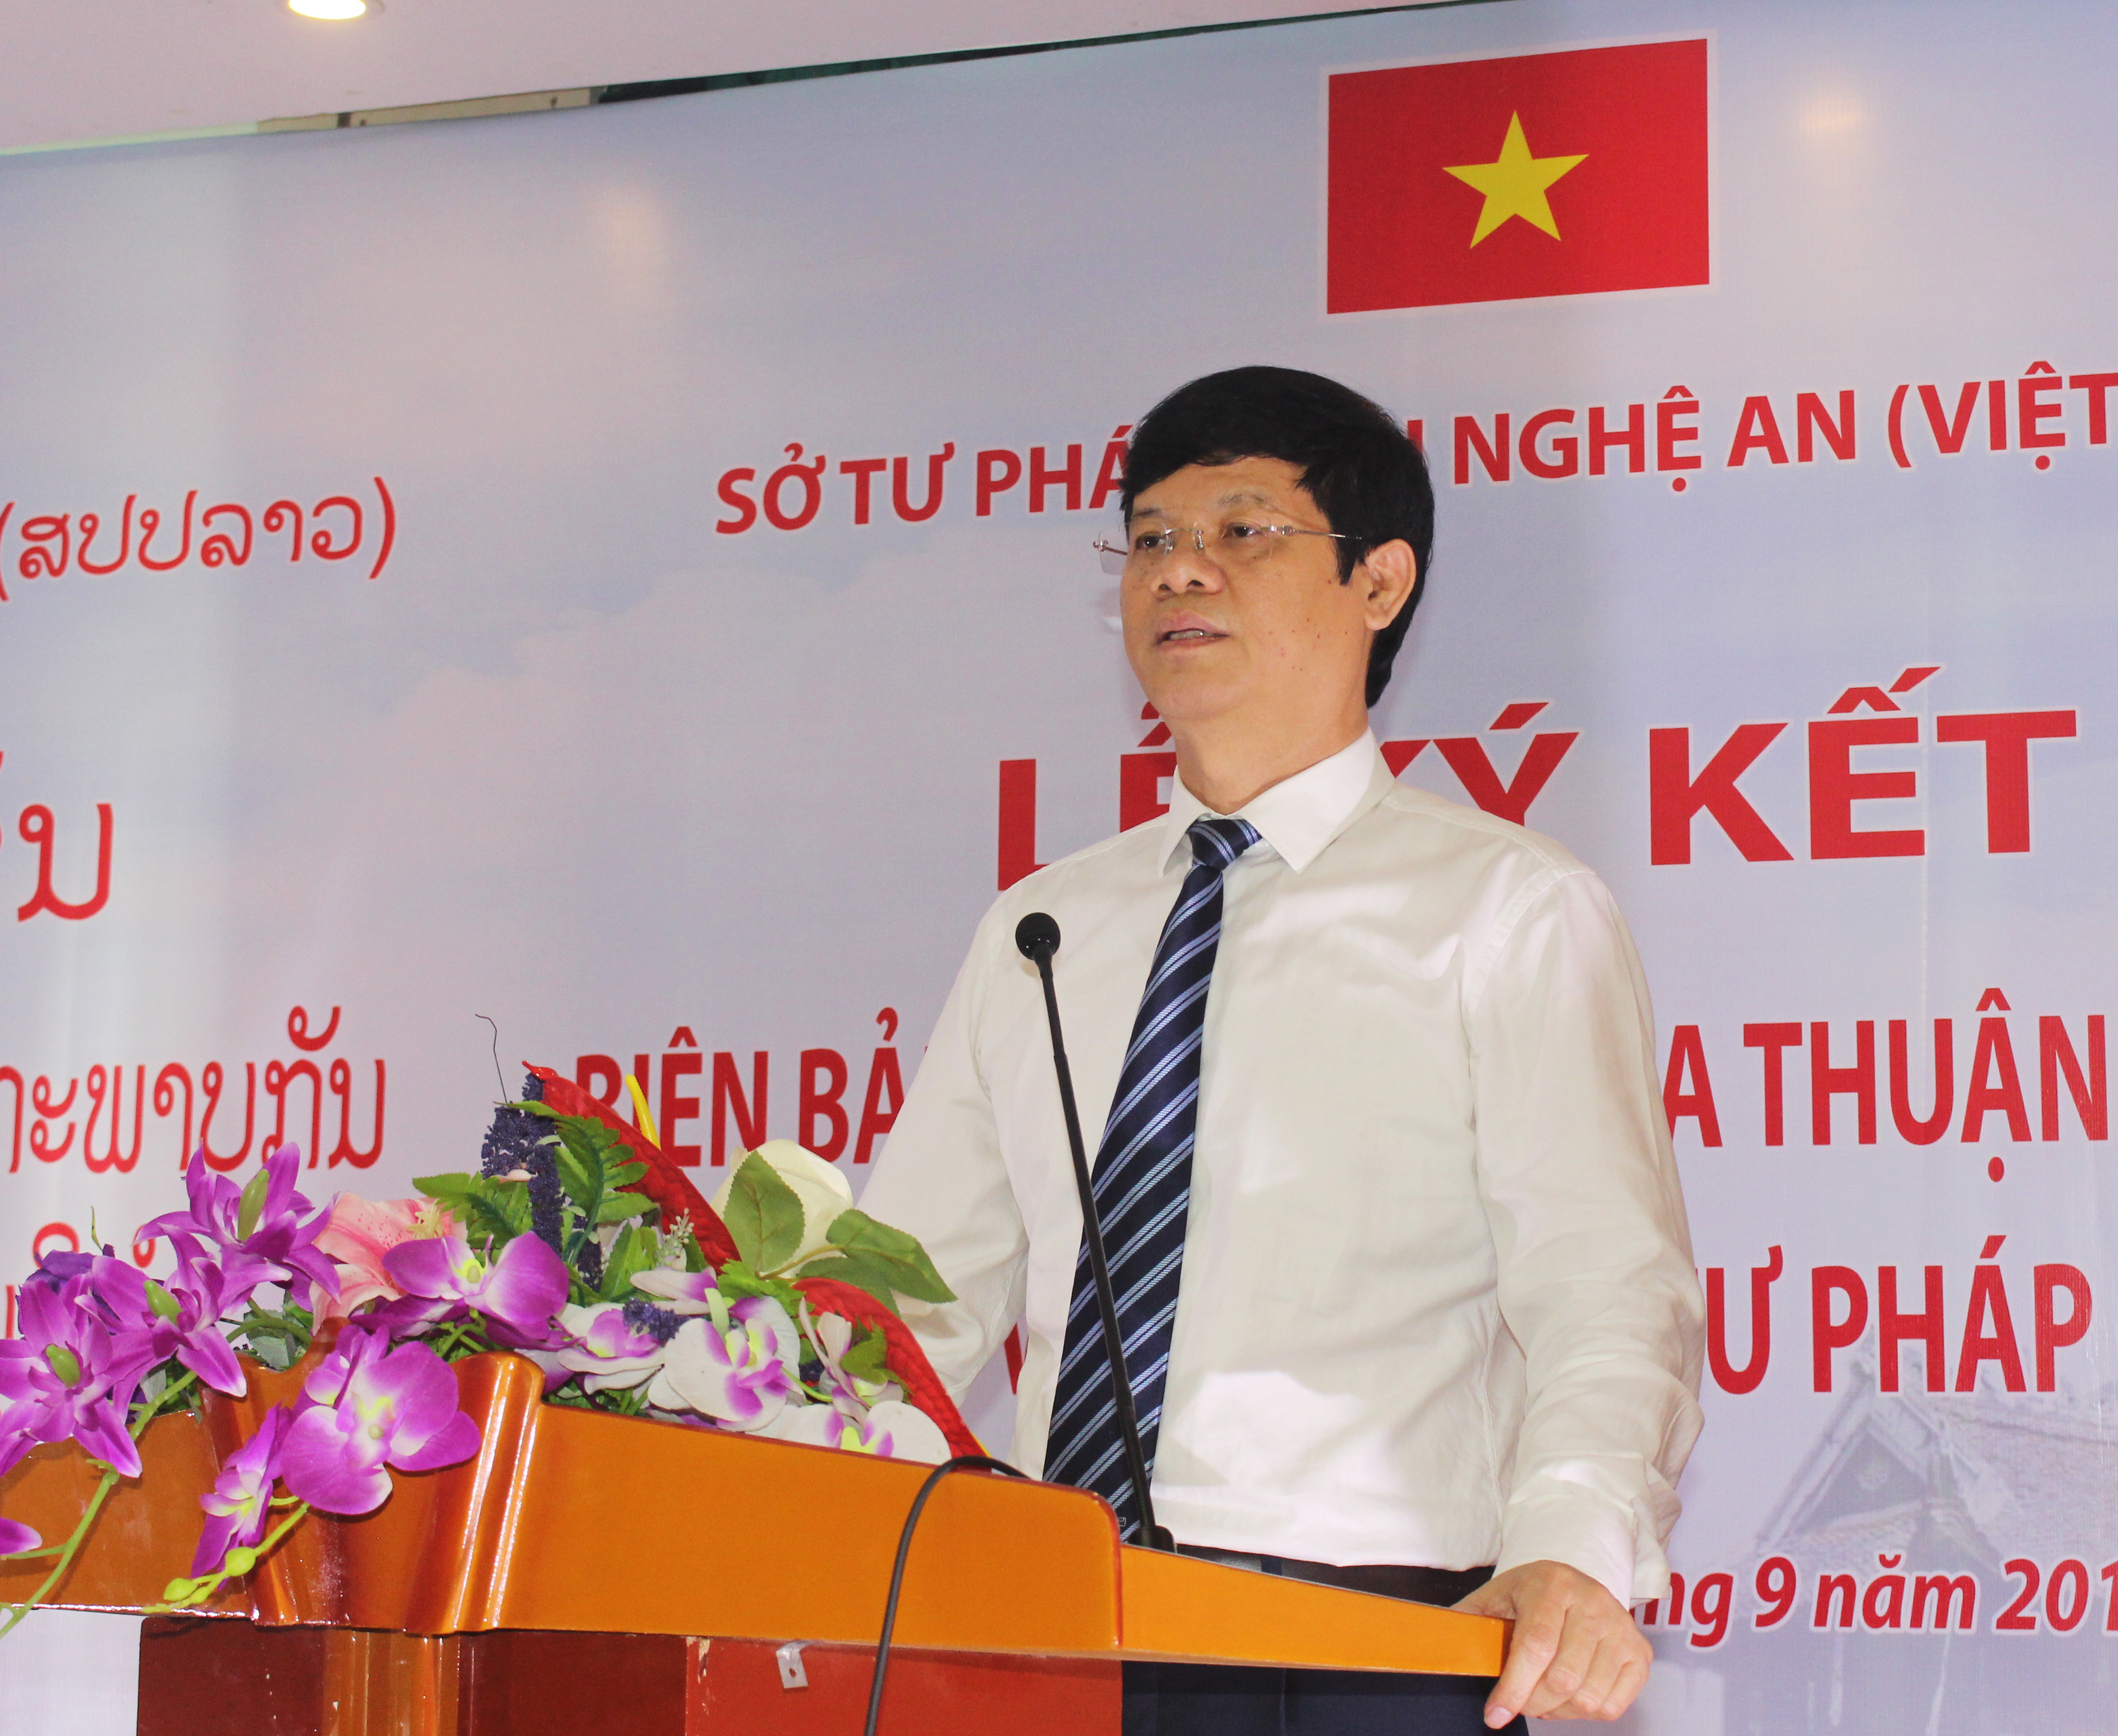 Đồng chí Lê Xuân Đại - Ủy viên BTV Tỉnh ủy, Phó Chủ tịch thường trực UBND tỉnh phát biểu tại buổi lễ. Ảnh: Phương Thảo